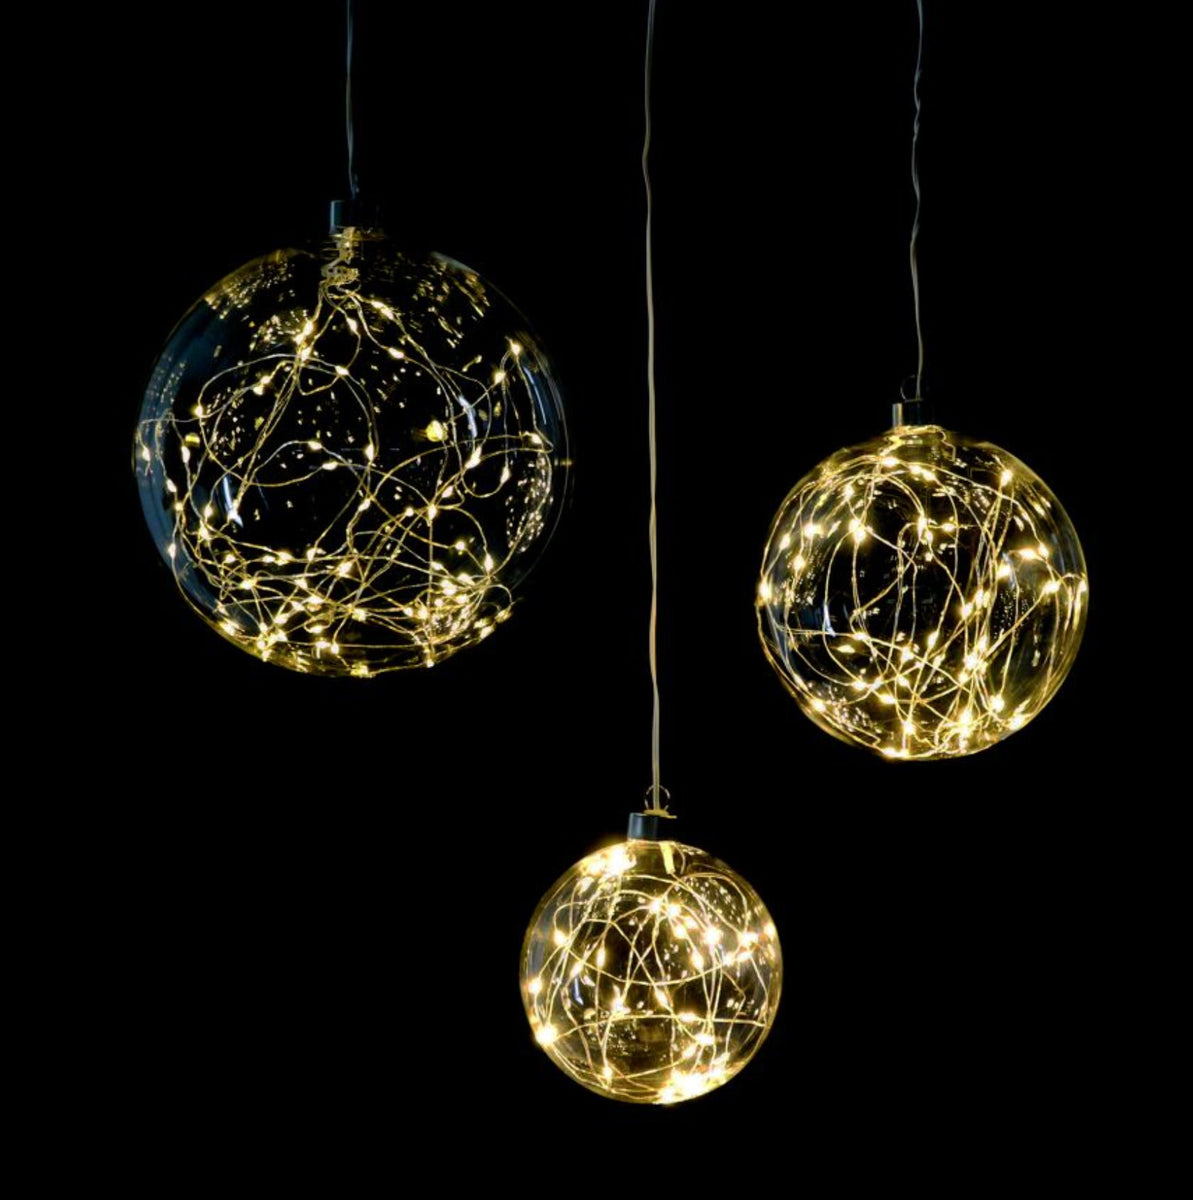 Star Trading Boule LED 35 cm pour système d'éclairage LED, boule